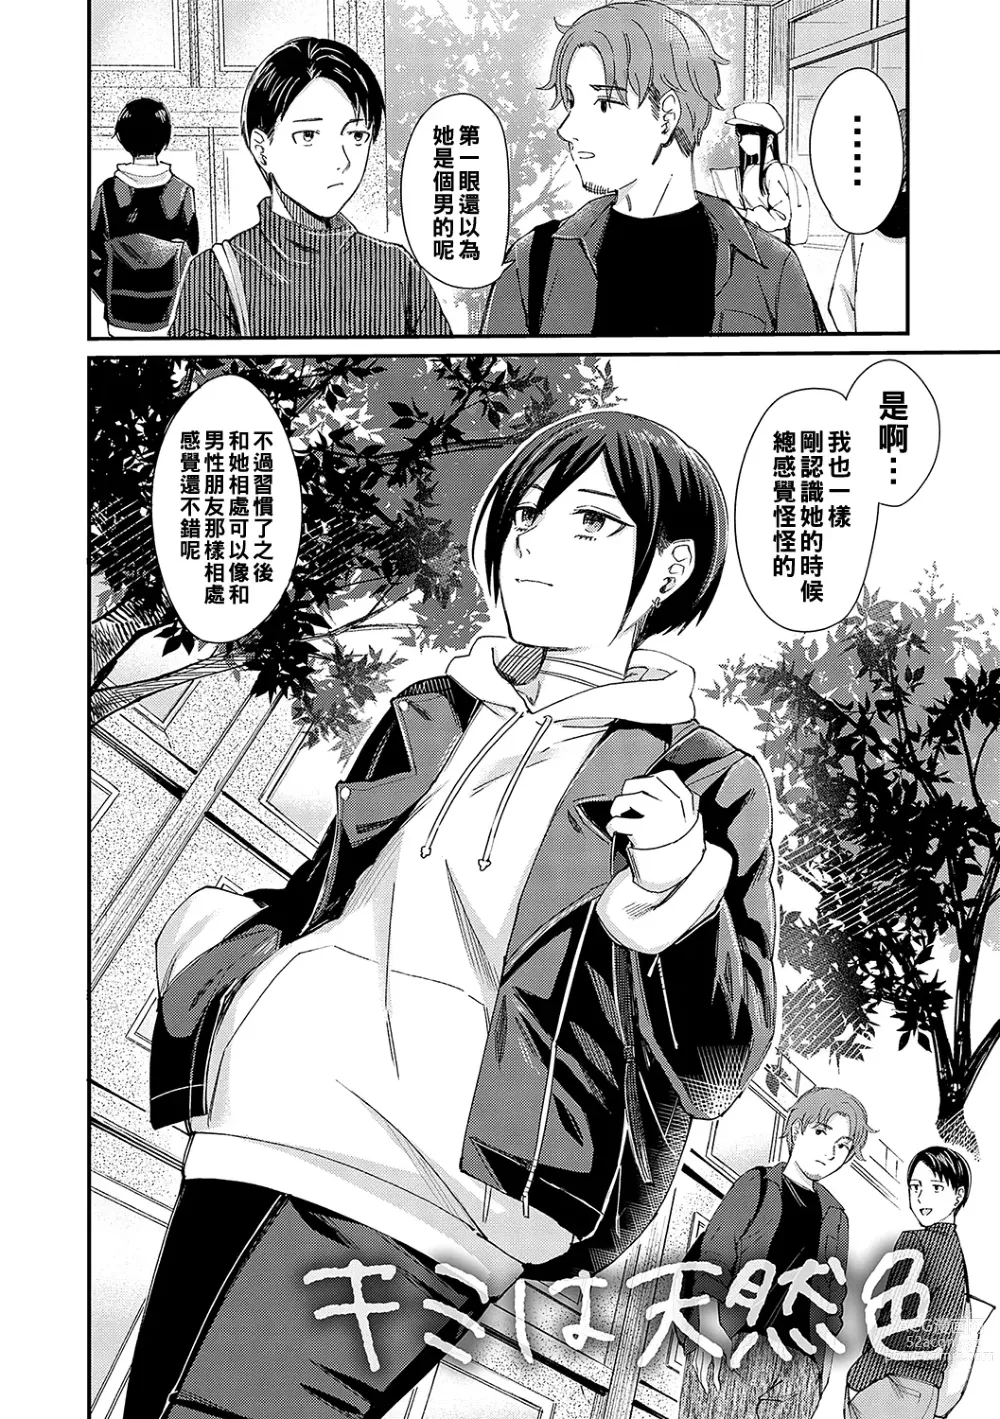 Page 2 of manga Kimi wa Tennenshoku